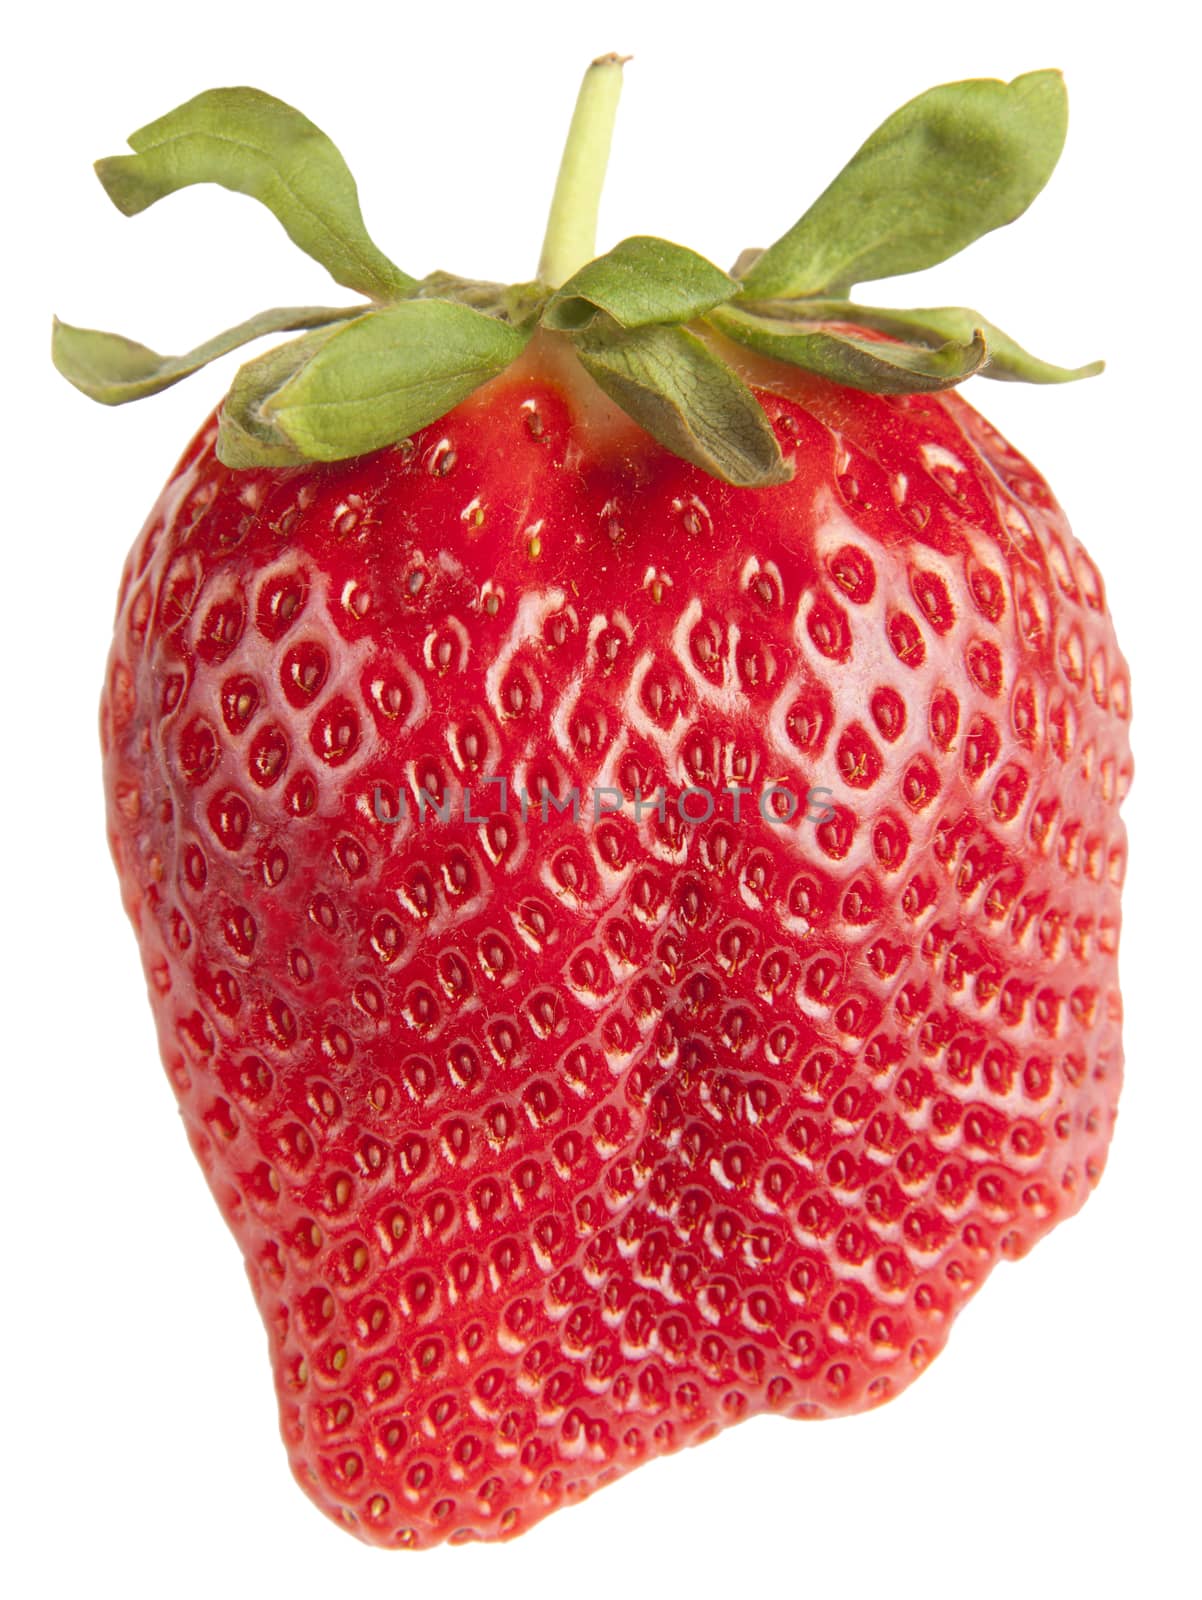 Single Strawberry Isolated on White Background